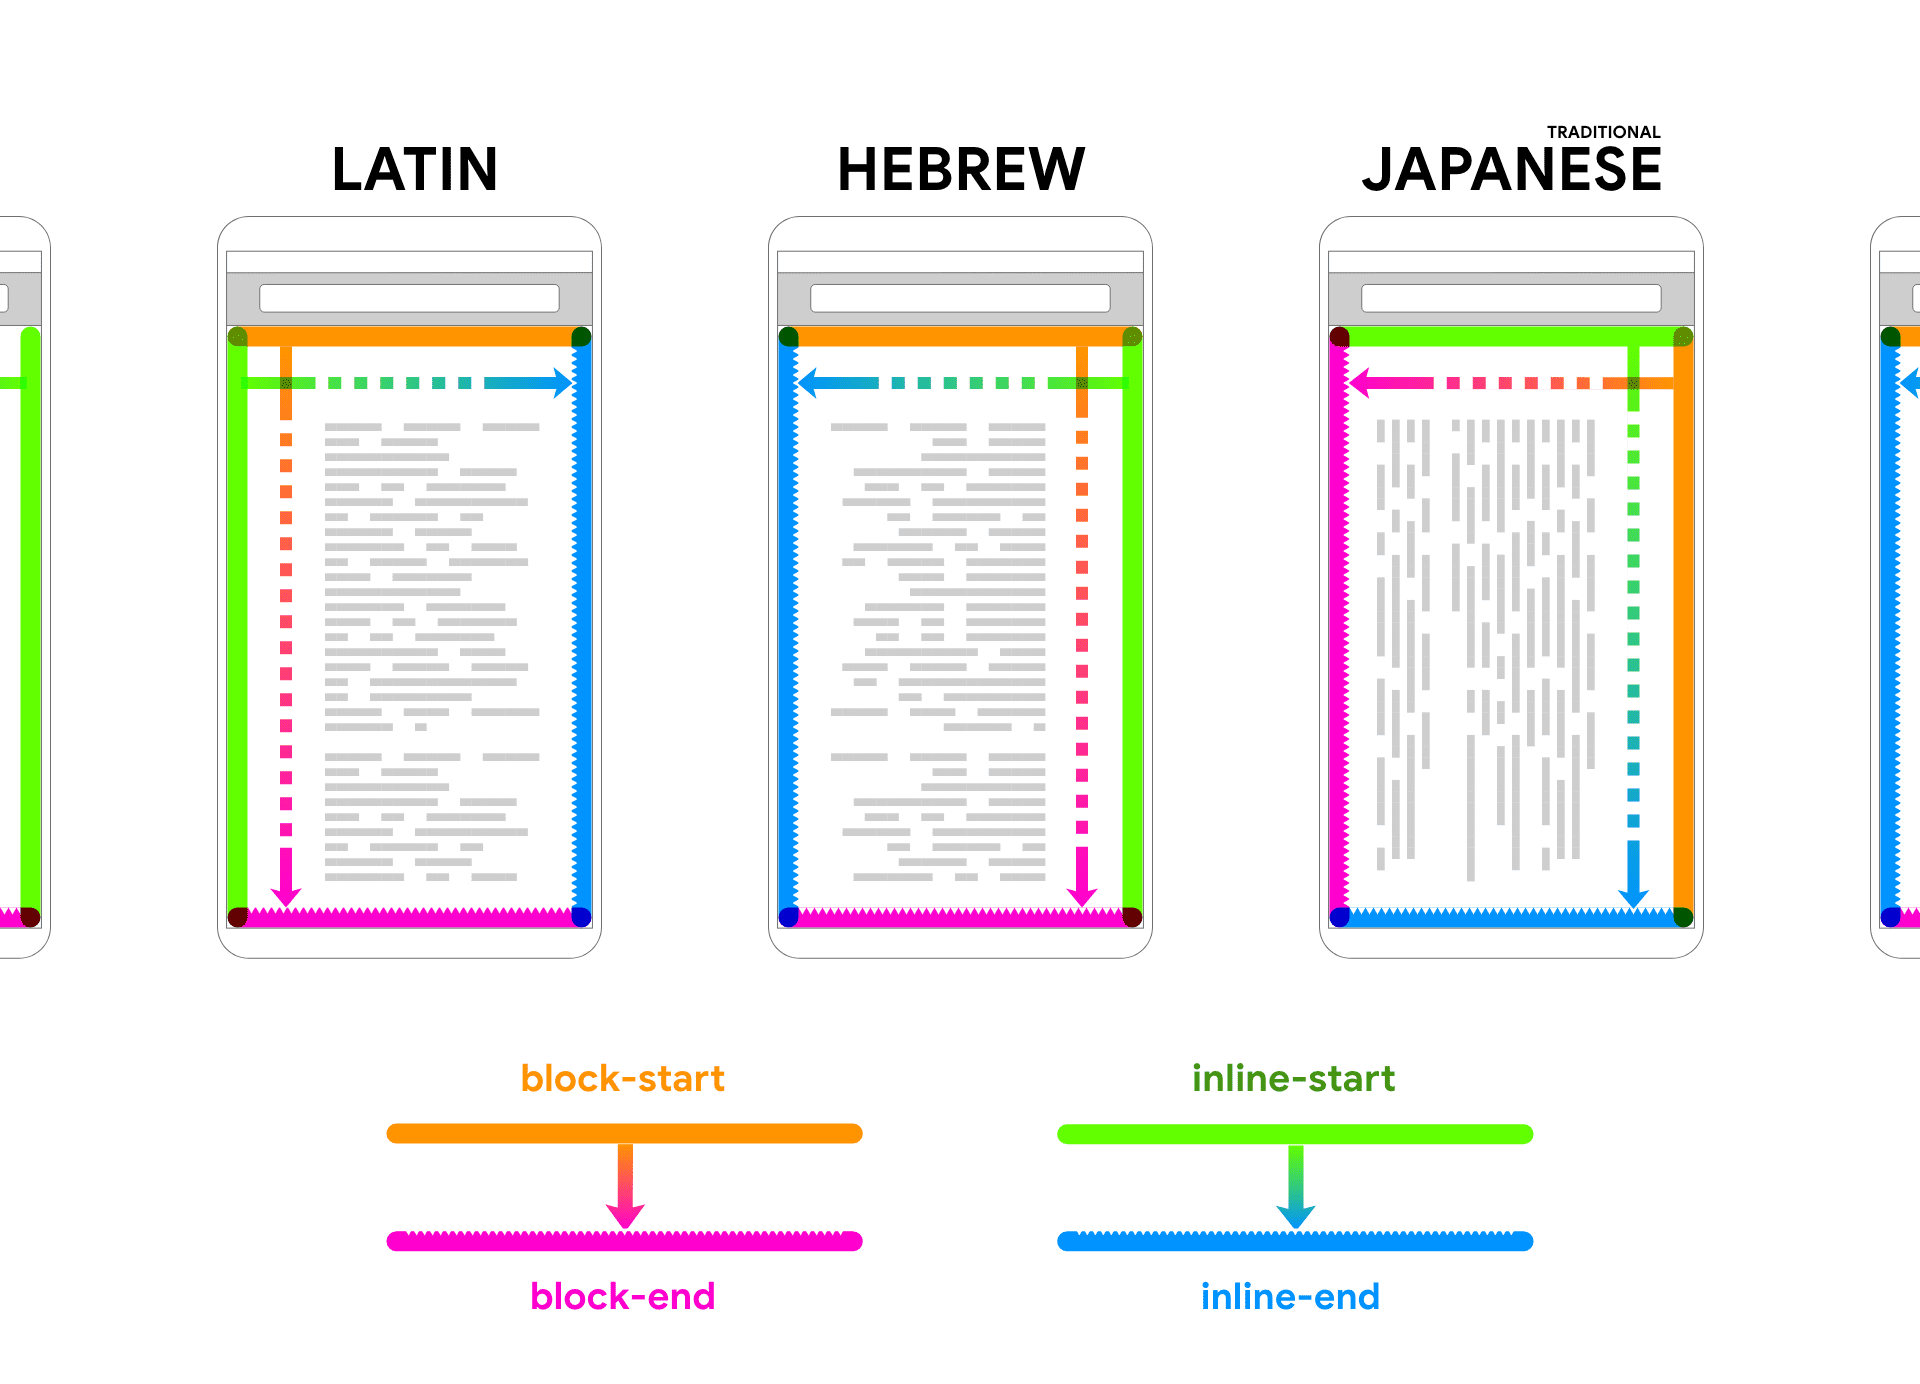 라틴어, 히브리어, 일본어의 경우 기기 프레임 내에 렌더링 자리표시자 텍스트가 표시됩니다. 텍스트에 따라 화살표와 색상이 표시되어 블록과 인라인의 두 방향이 연결됩니다.